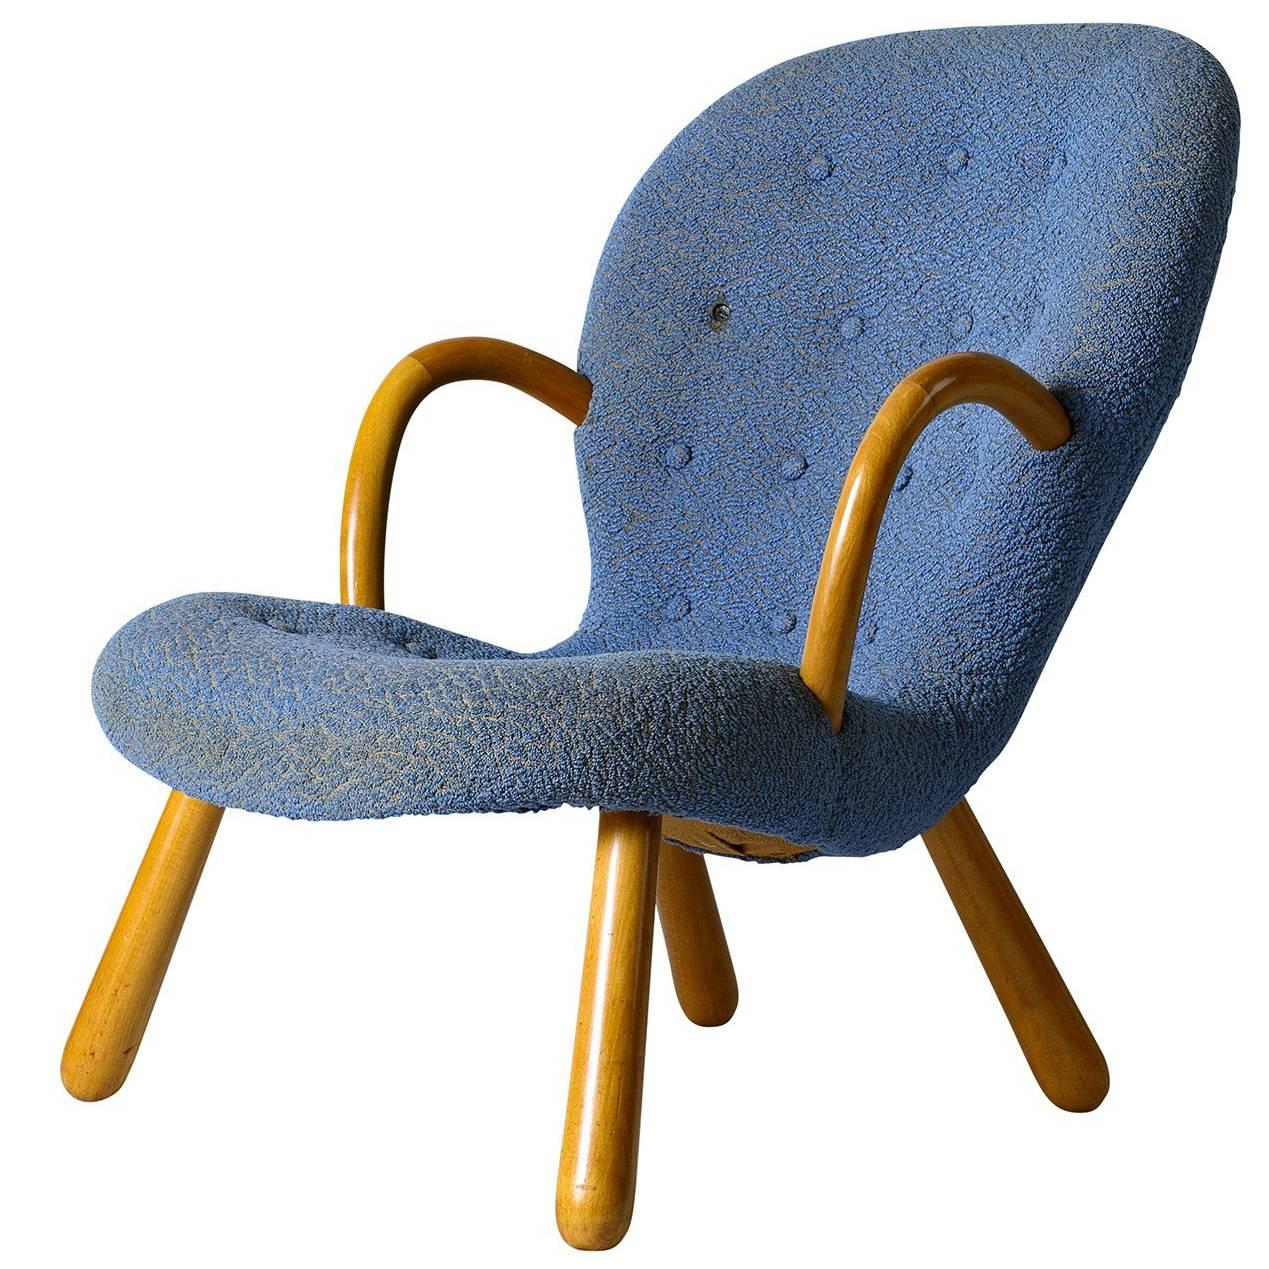 Philip Arctander "Clam" Chair